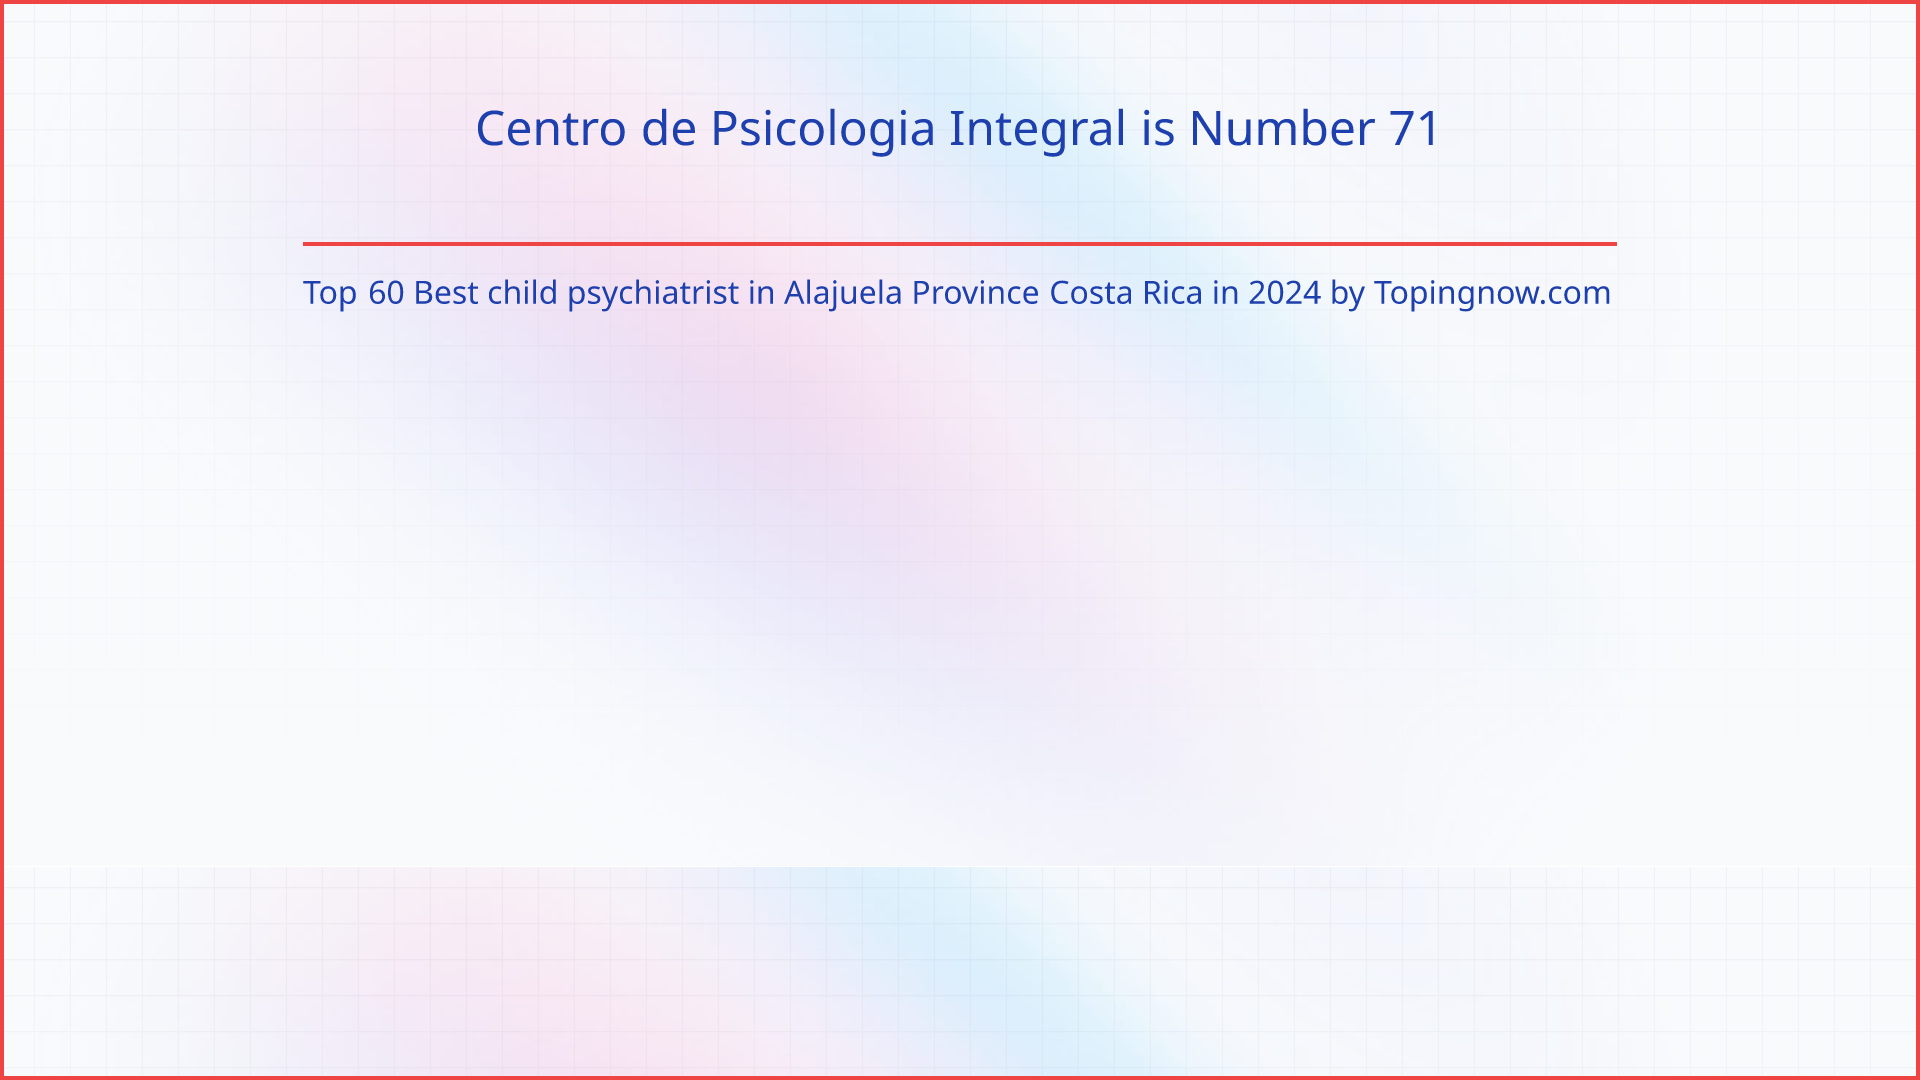 Centro de Psicologia Integral: Top 60 Best child psychiatrist in Alajuela Province Costa Rica in 2024